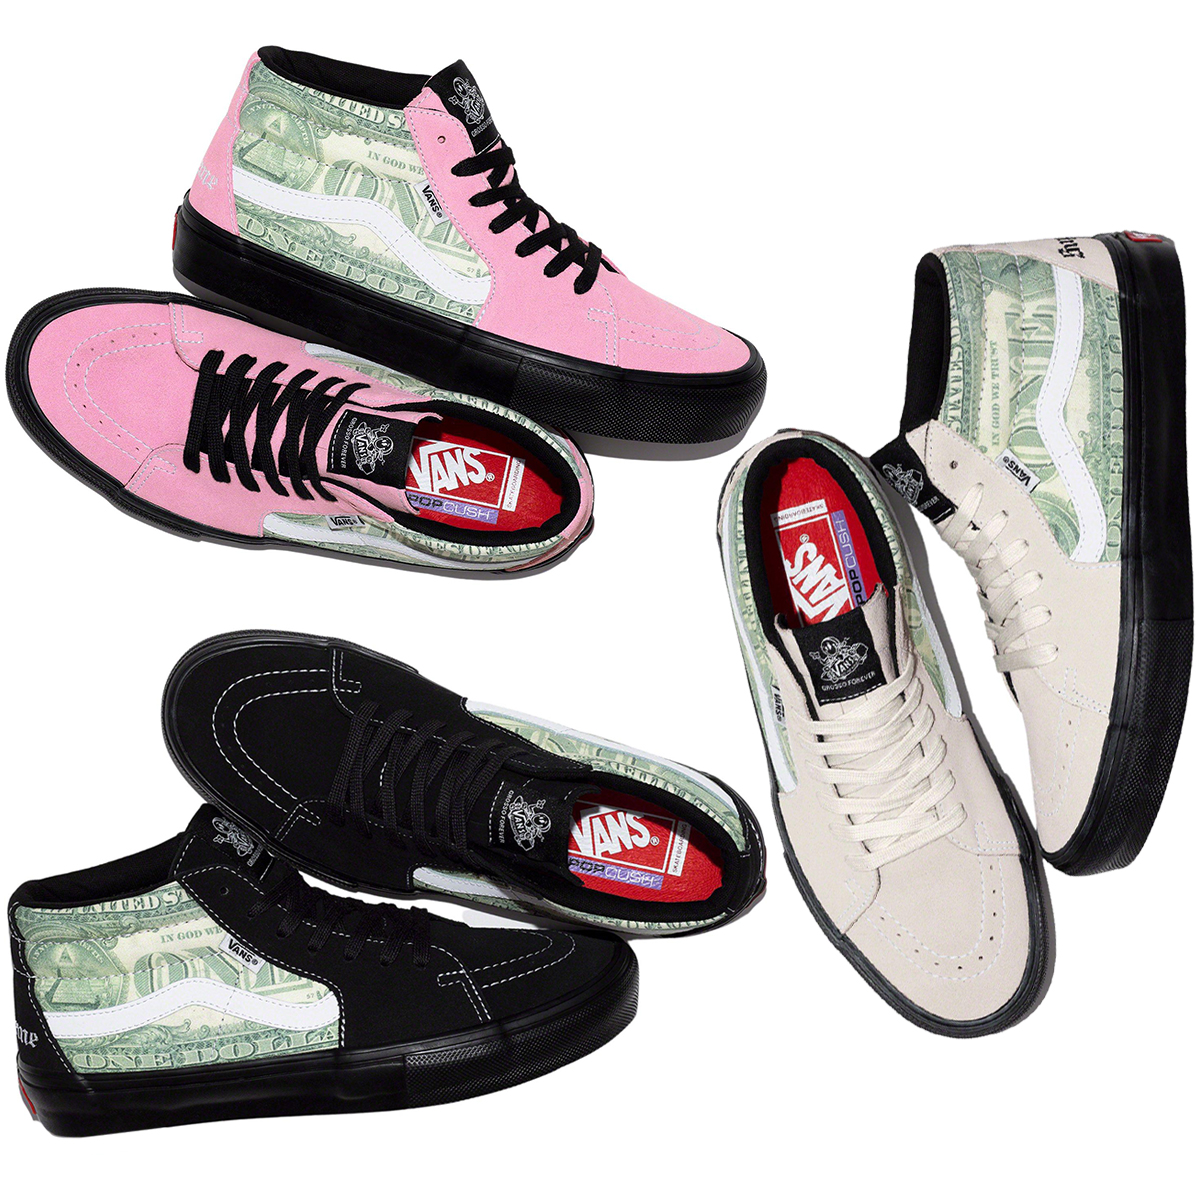 Vans Skate Grosso Mid Supreme Dollar Pink